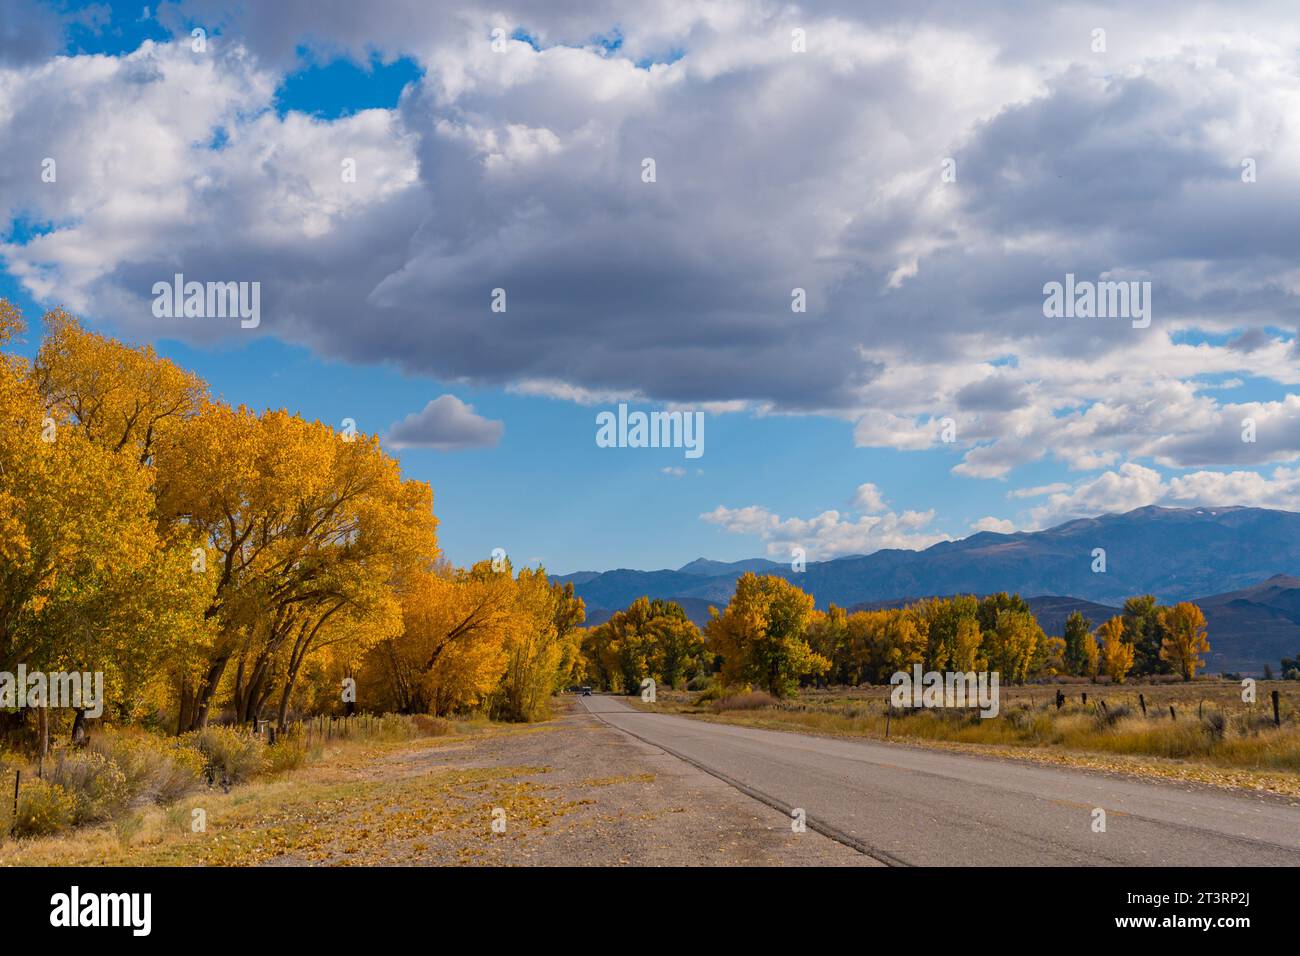 Im Owens Valley außerhalb von Bishop California werden große Pappelbäume in ihre herbstgelben Farben verwandelt. Rundes Tal, blauer Himmel, sc Stockfoto